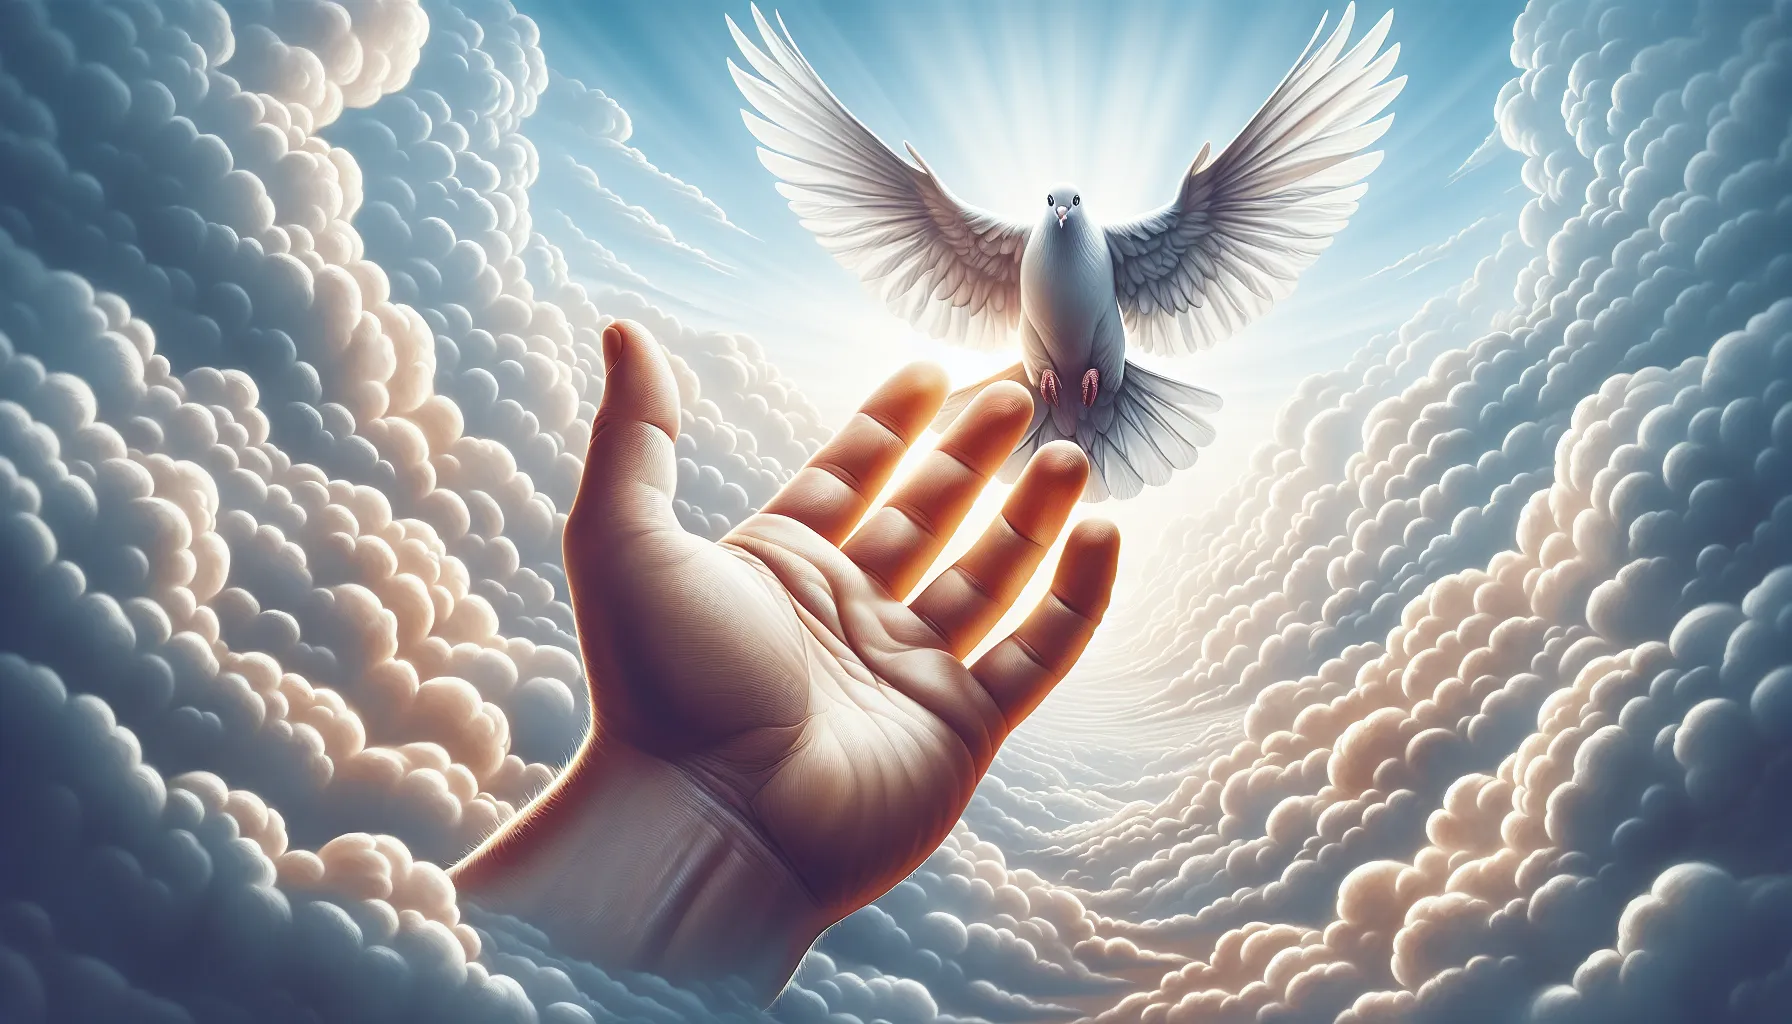 Una ilustración de una mano extendida en señal de perdón